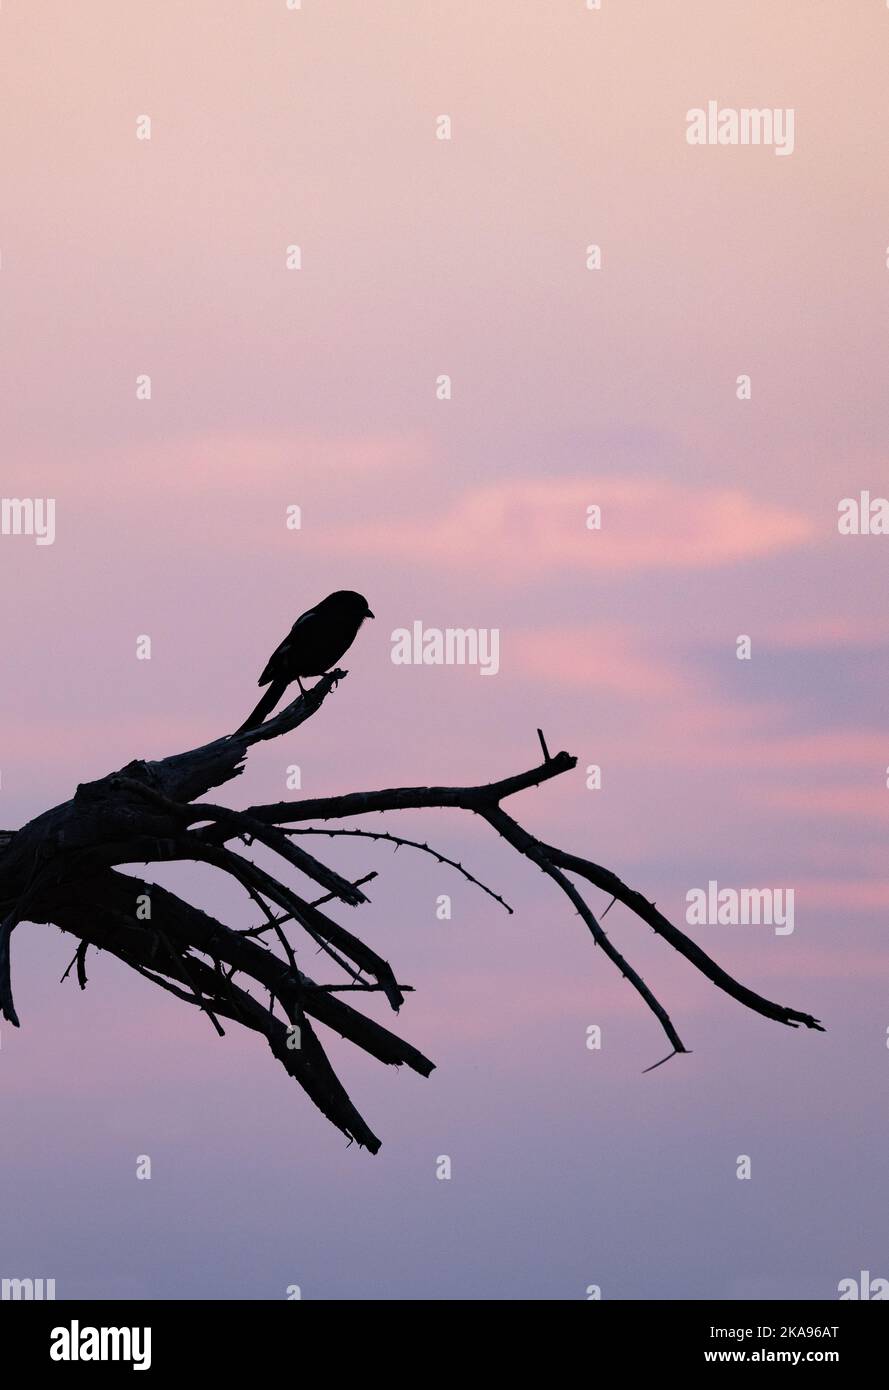 Puesta de sol - cielo rojo al atardecer con pájaros y árboles en silueta, Botswana África. Concepto de paz y tranquilidad Foto de stock